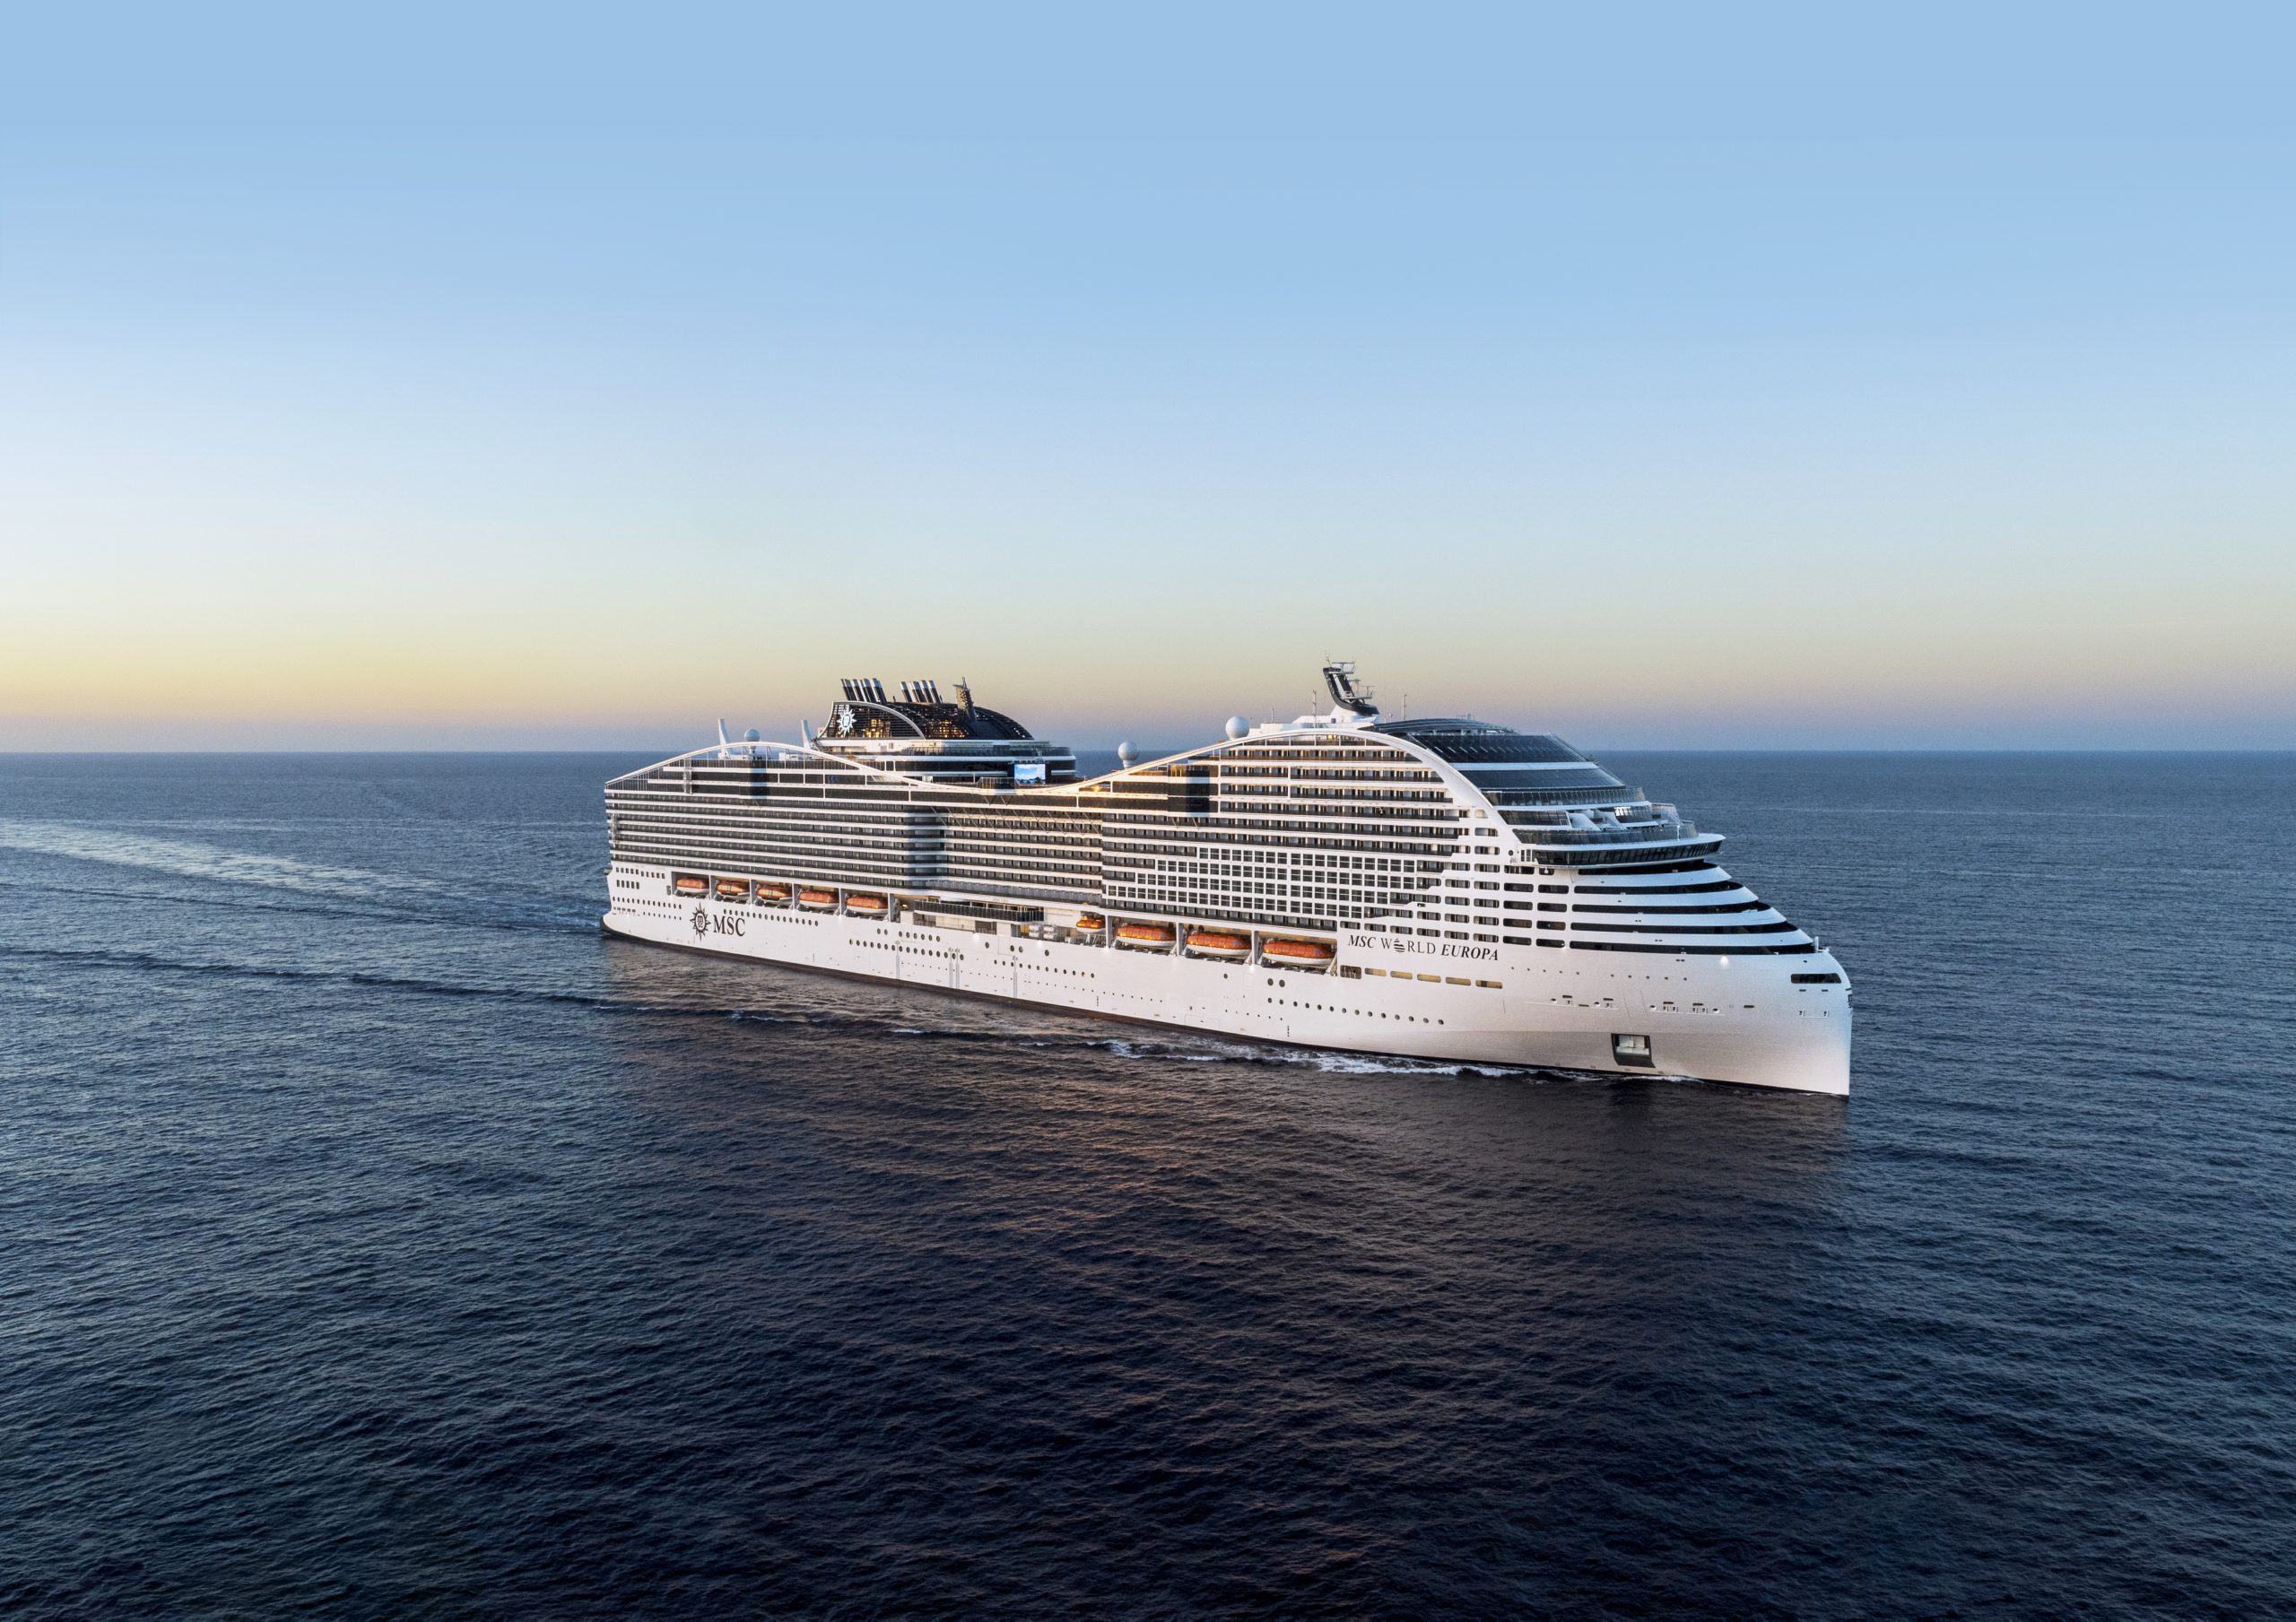 MSC Cruises startet neue Markenkampagne "Zukunft der Kreuzfahrt"